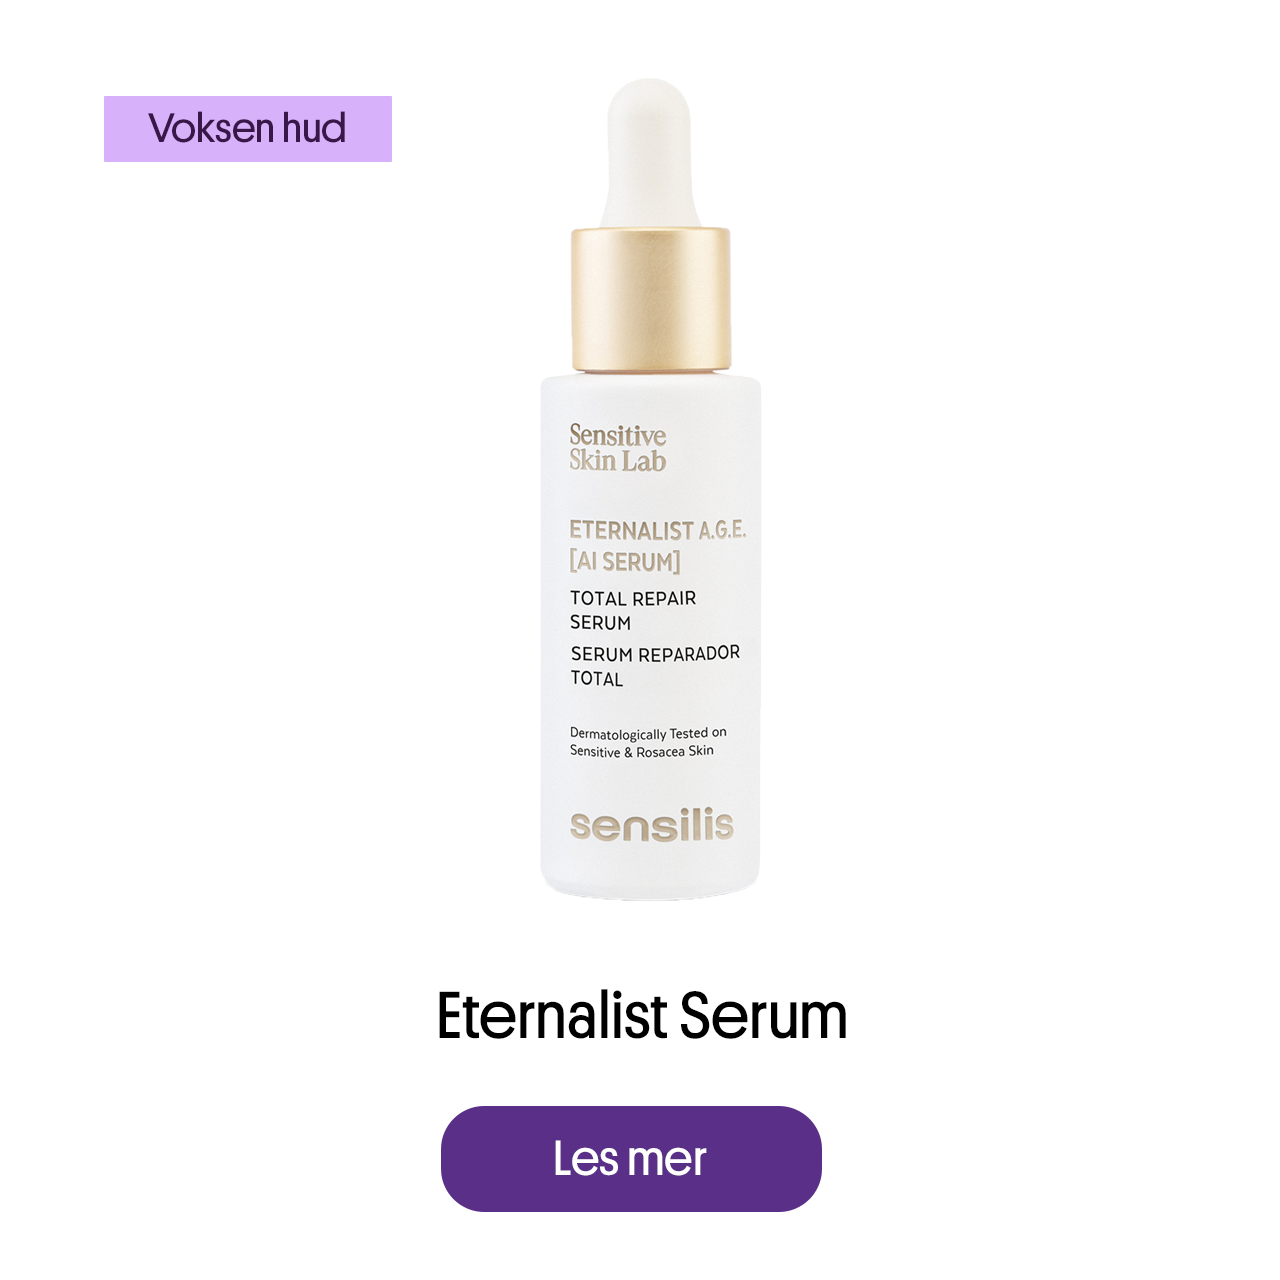 Eternalist serum for voksen hud